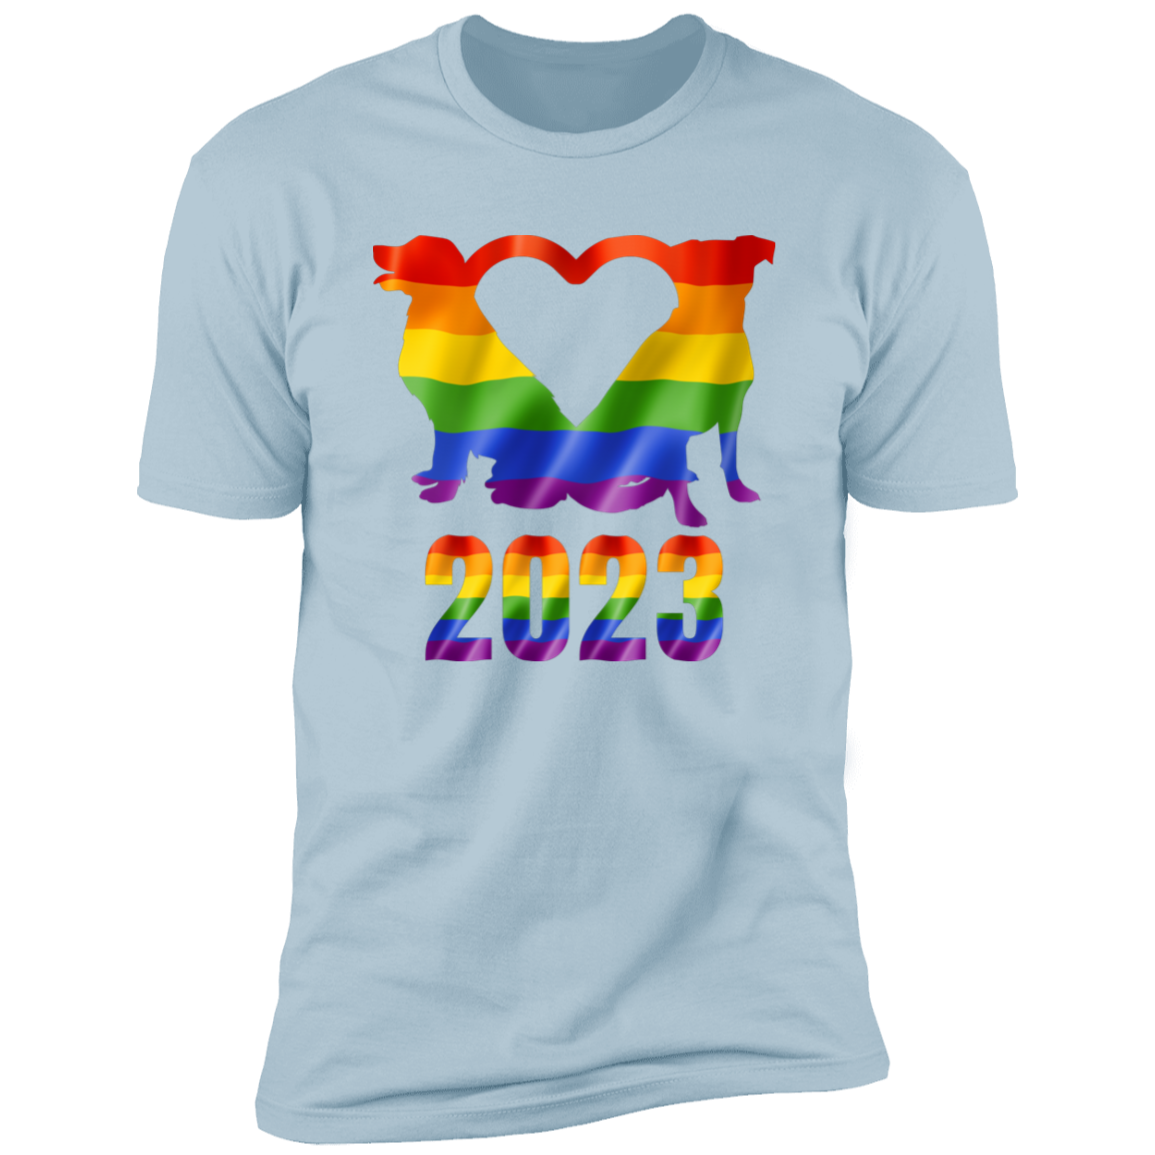 Dog Pride 2023, dog pride dog shirt for humans, in light blue